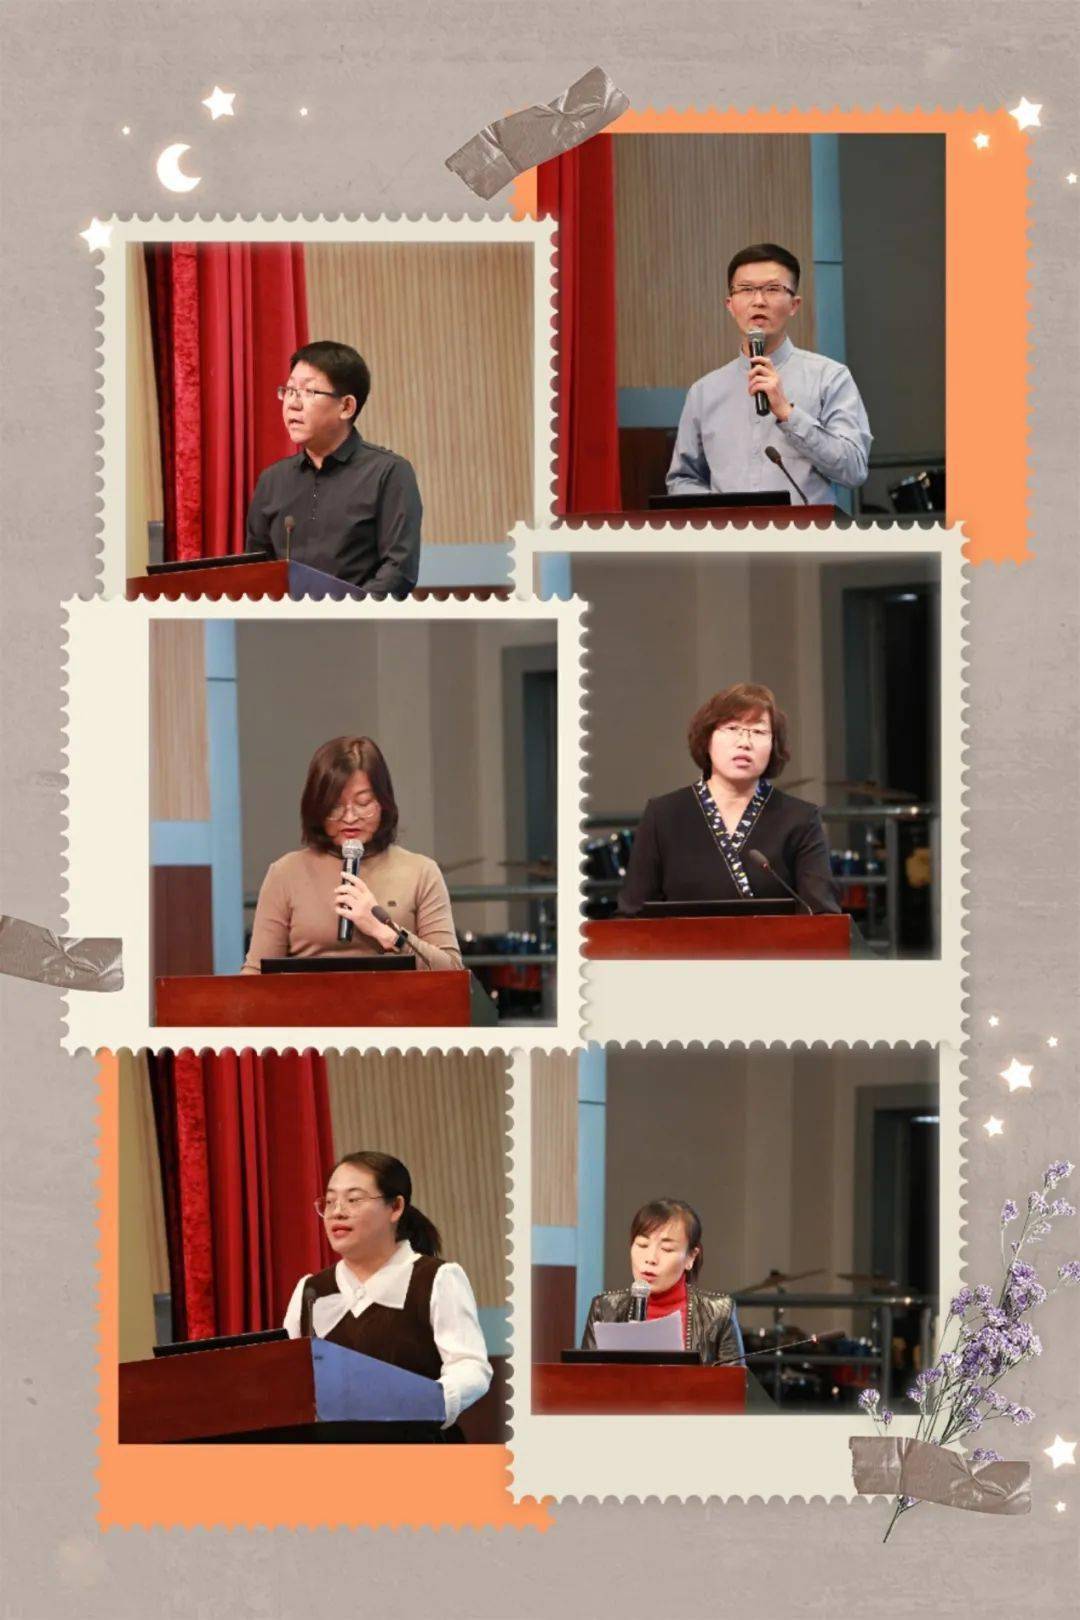 老师,李欣老师,薛璐老师,边金鸽老师分别进行了六个课型的课堂展示